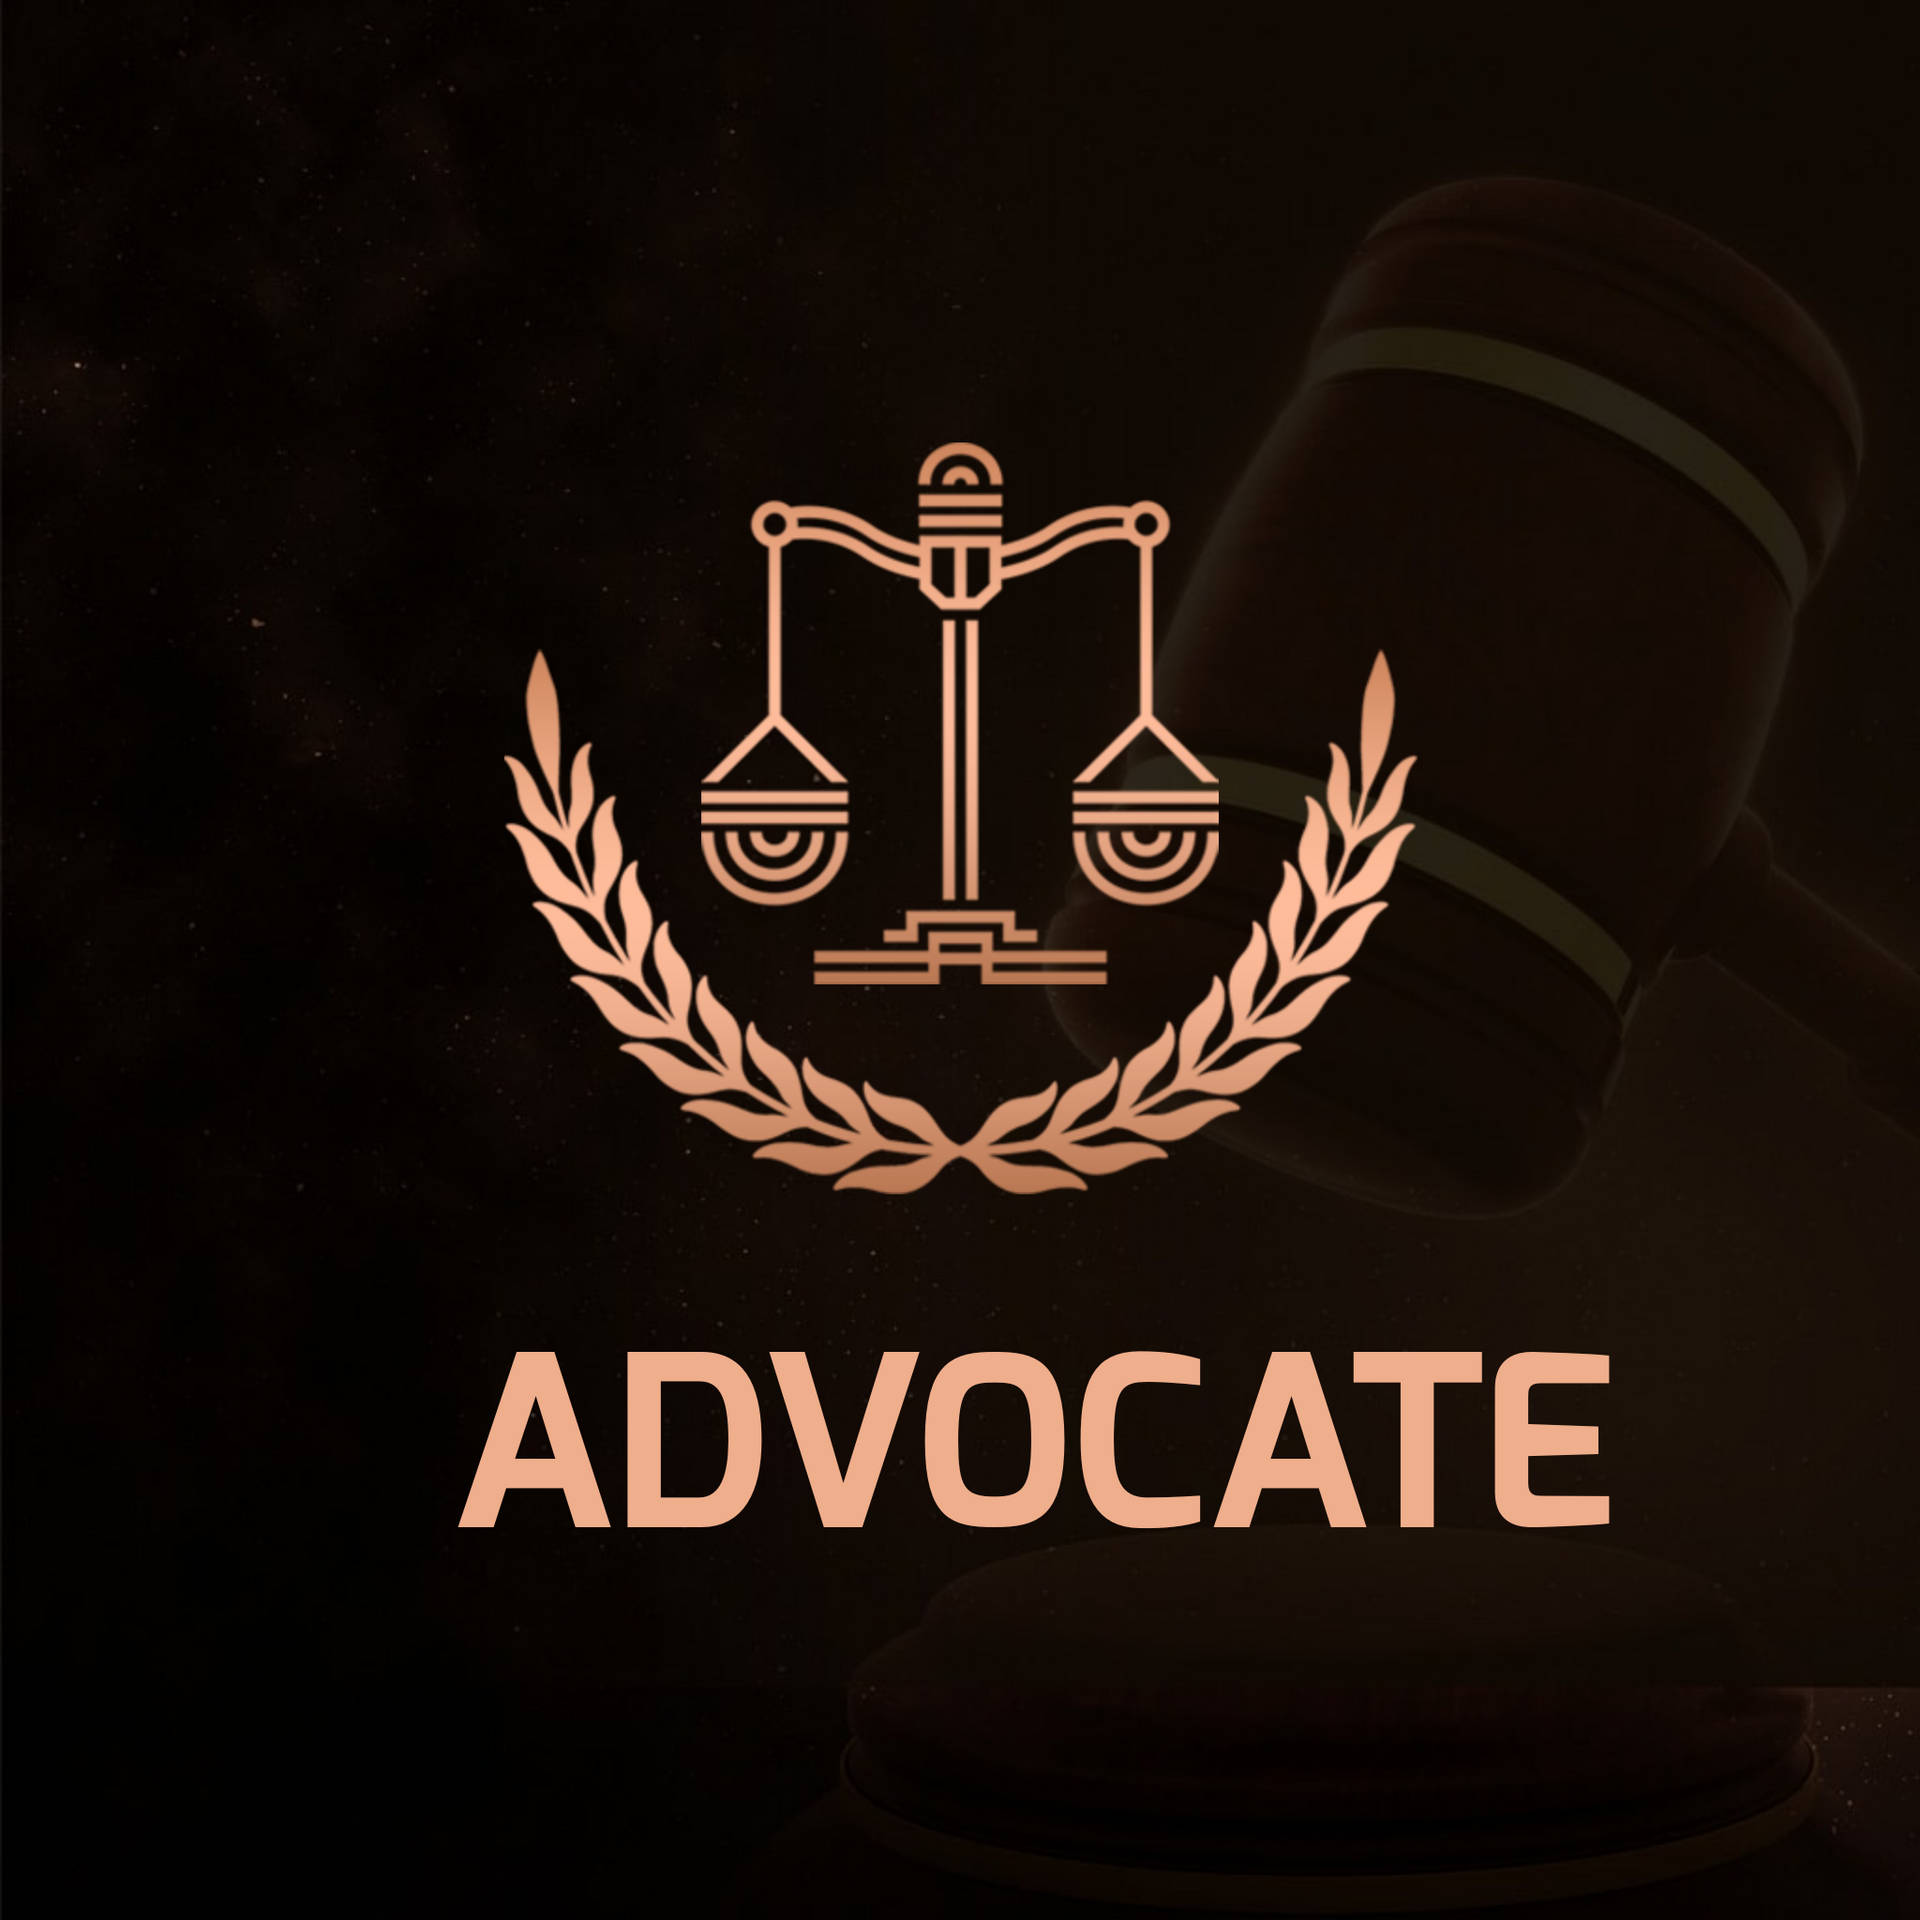 Advocate logo HD wallpapers | Pxfuel